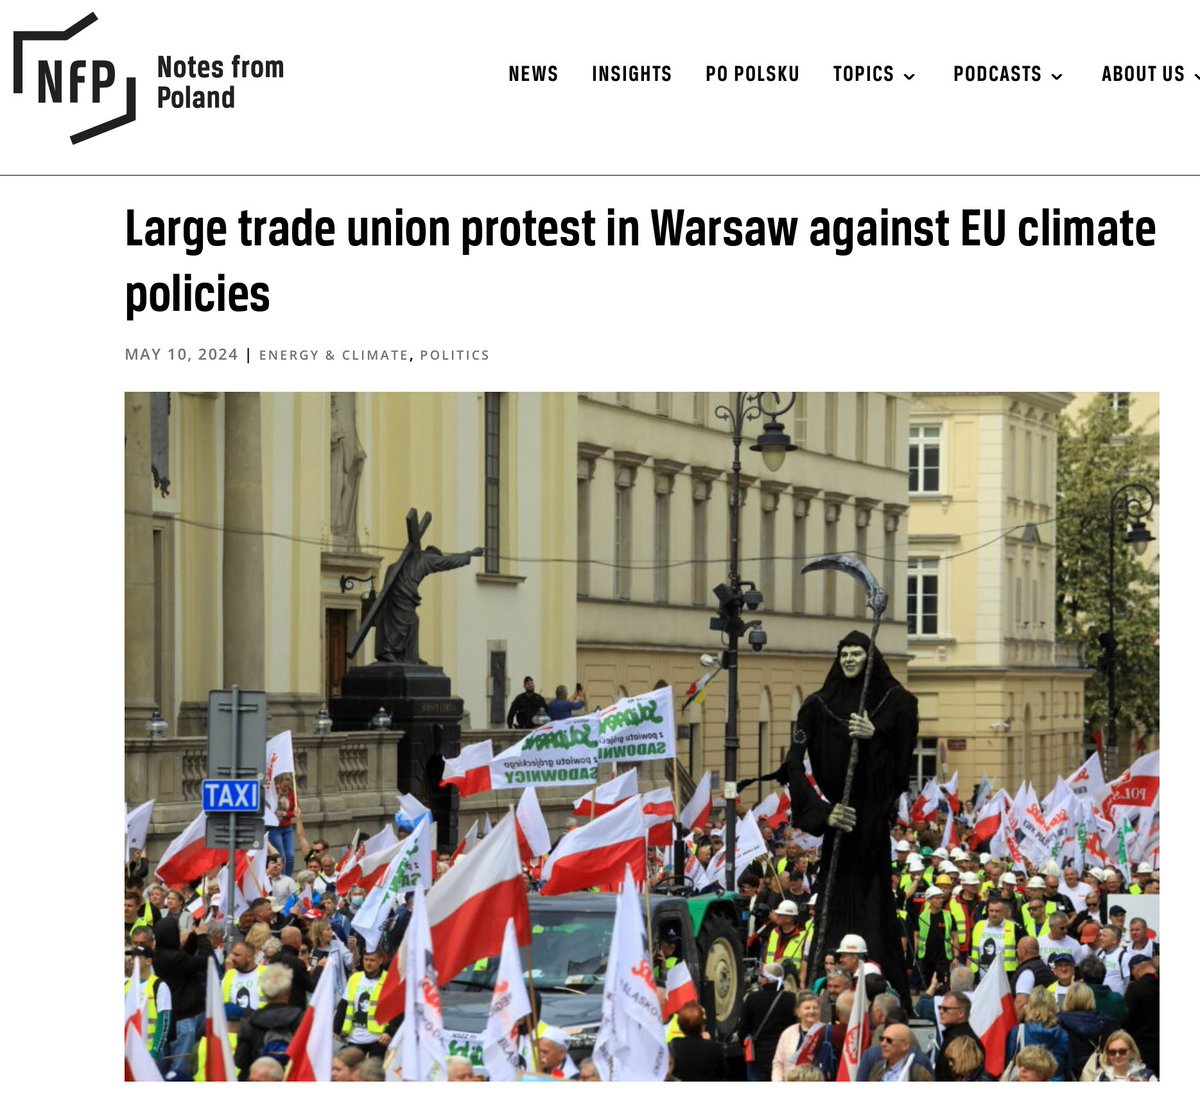 “Heute fand in Warschau eine Groß-Demonstration gegen die Klimapolitik der EU statt, die von der Gewerkschaft Solidarność organisiert wurde und an der führende Vertreter der Partei Recht und Gerechtigkeit (PiS), der größten Oppositionspartei der EU-freundlichen Regierung von…